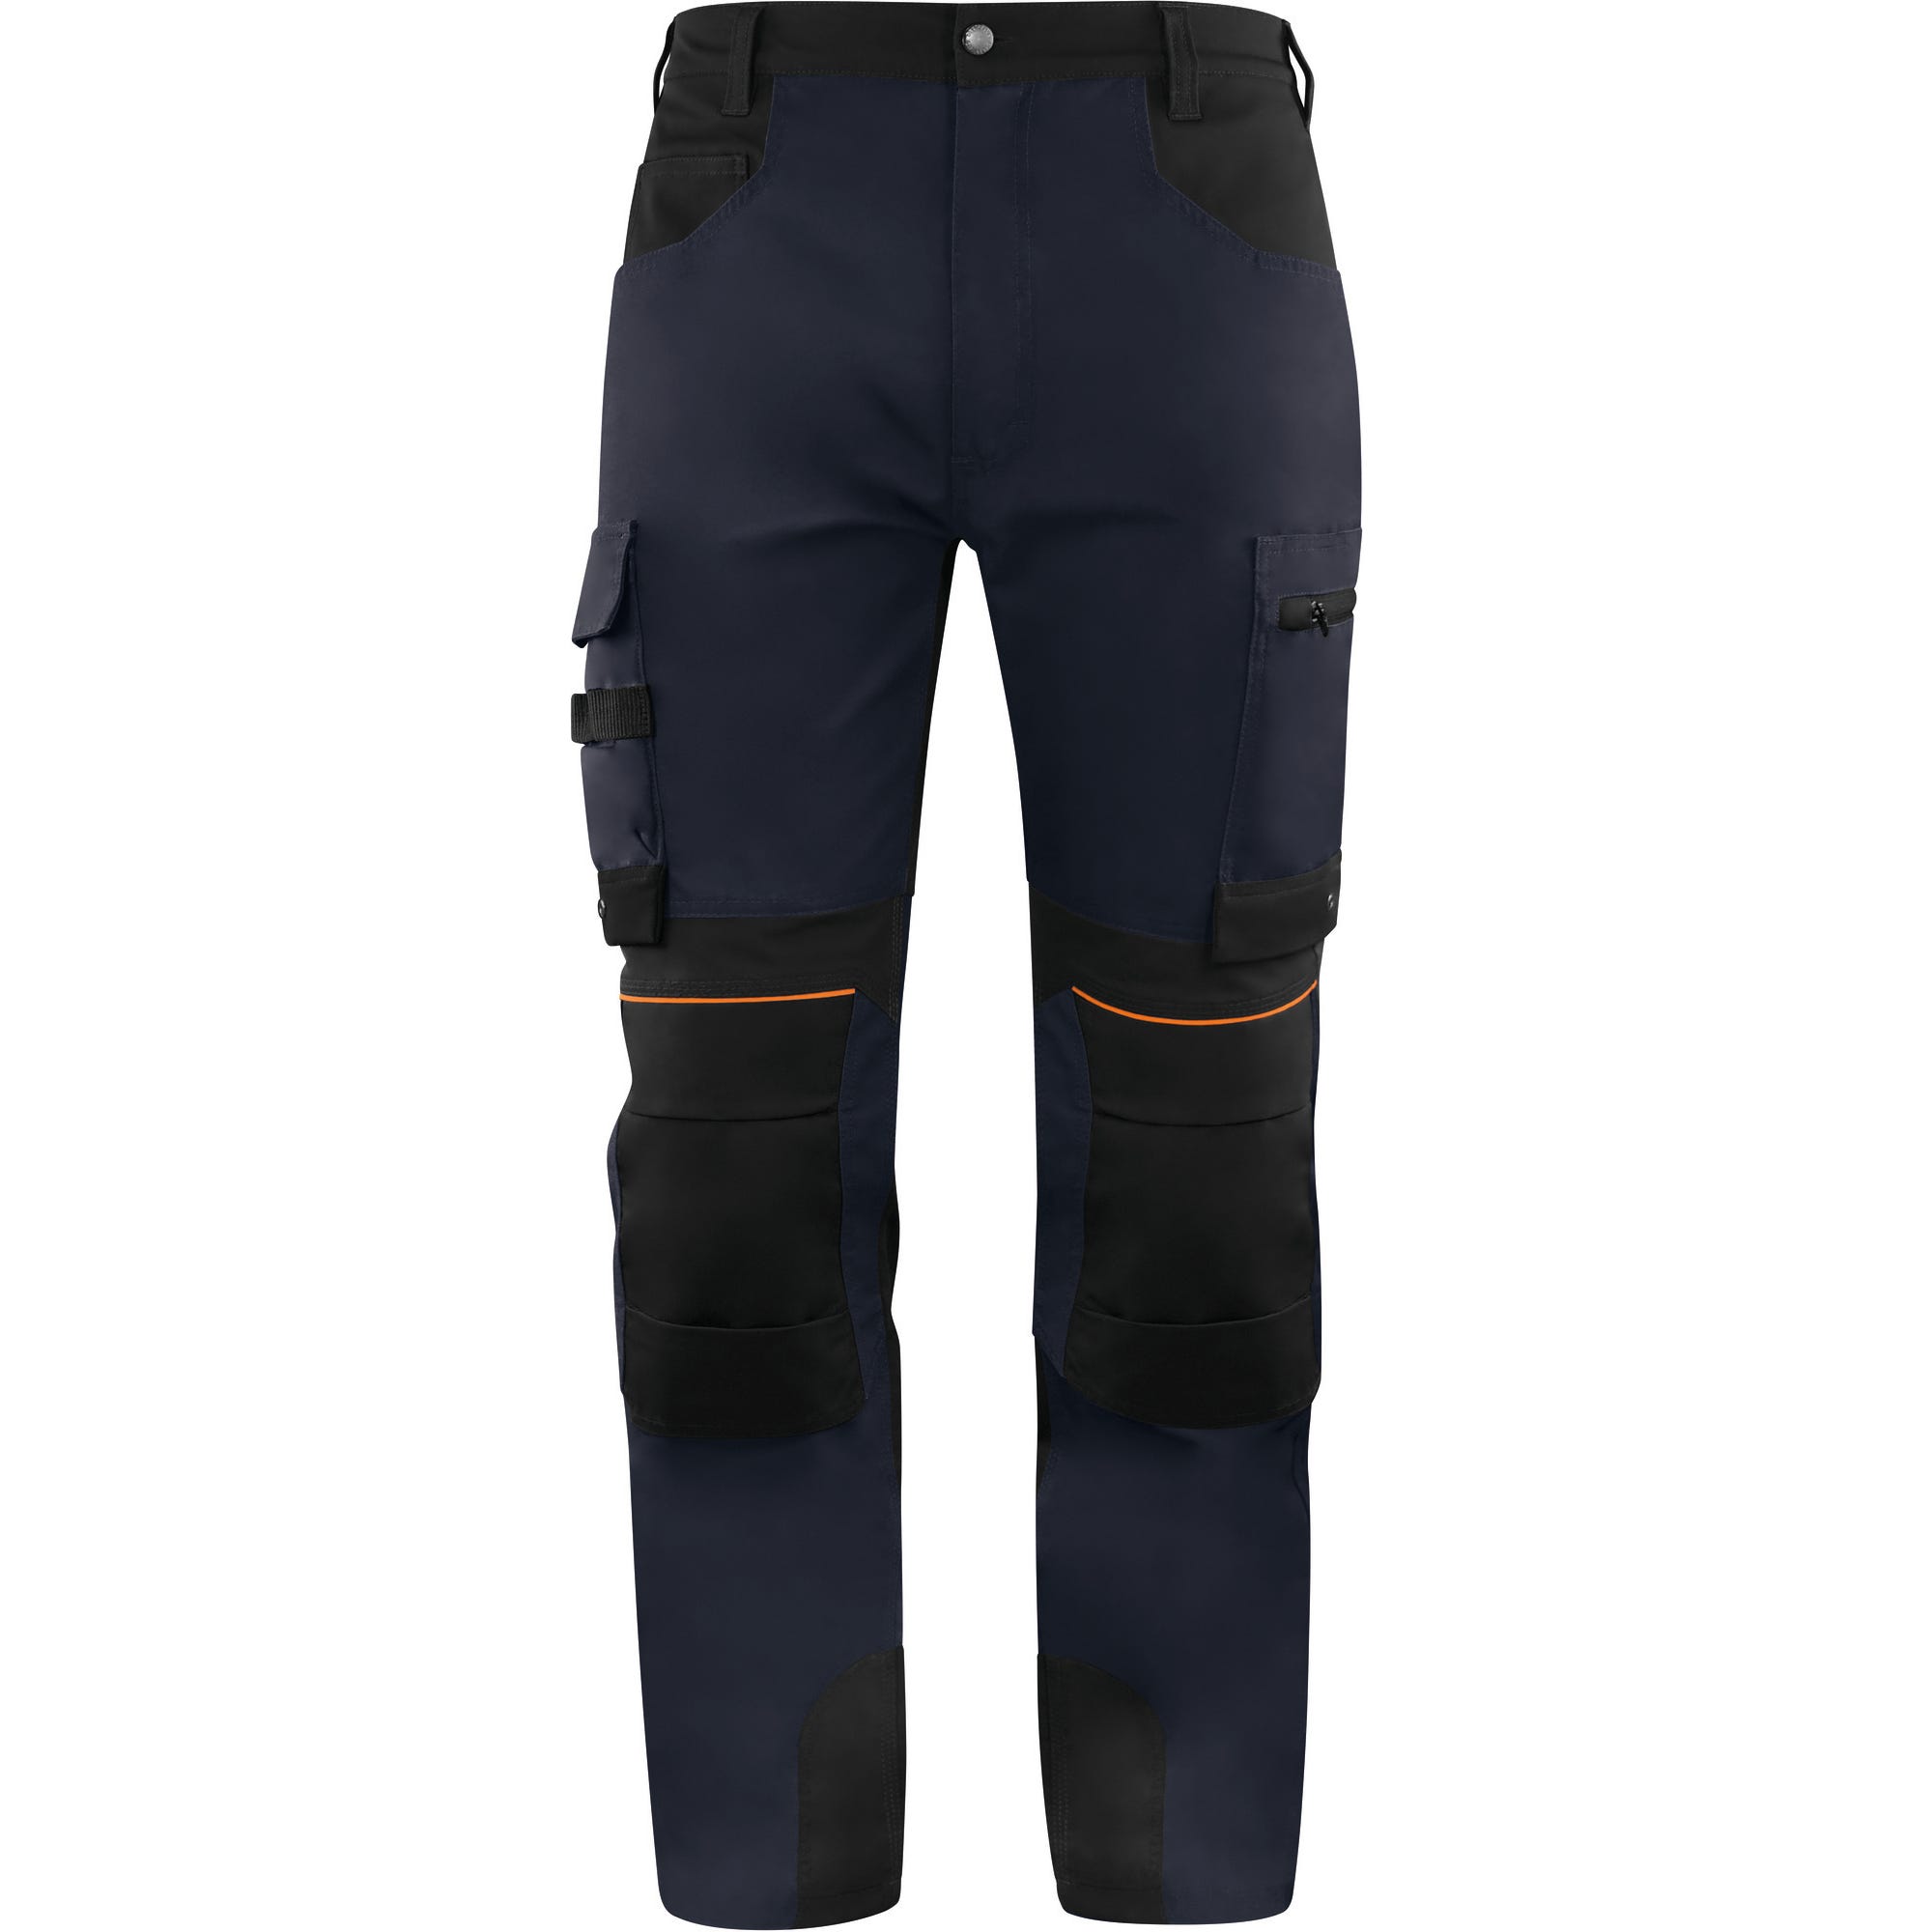 Pantalon de travail Marine/Noir T.XXL M5PA3STR - DELTA PLUS 0